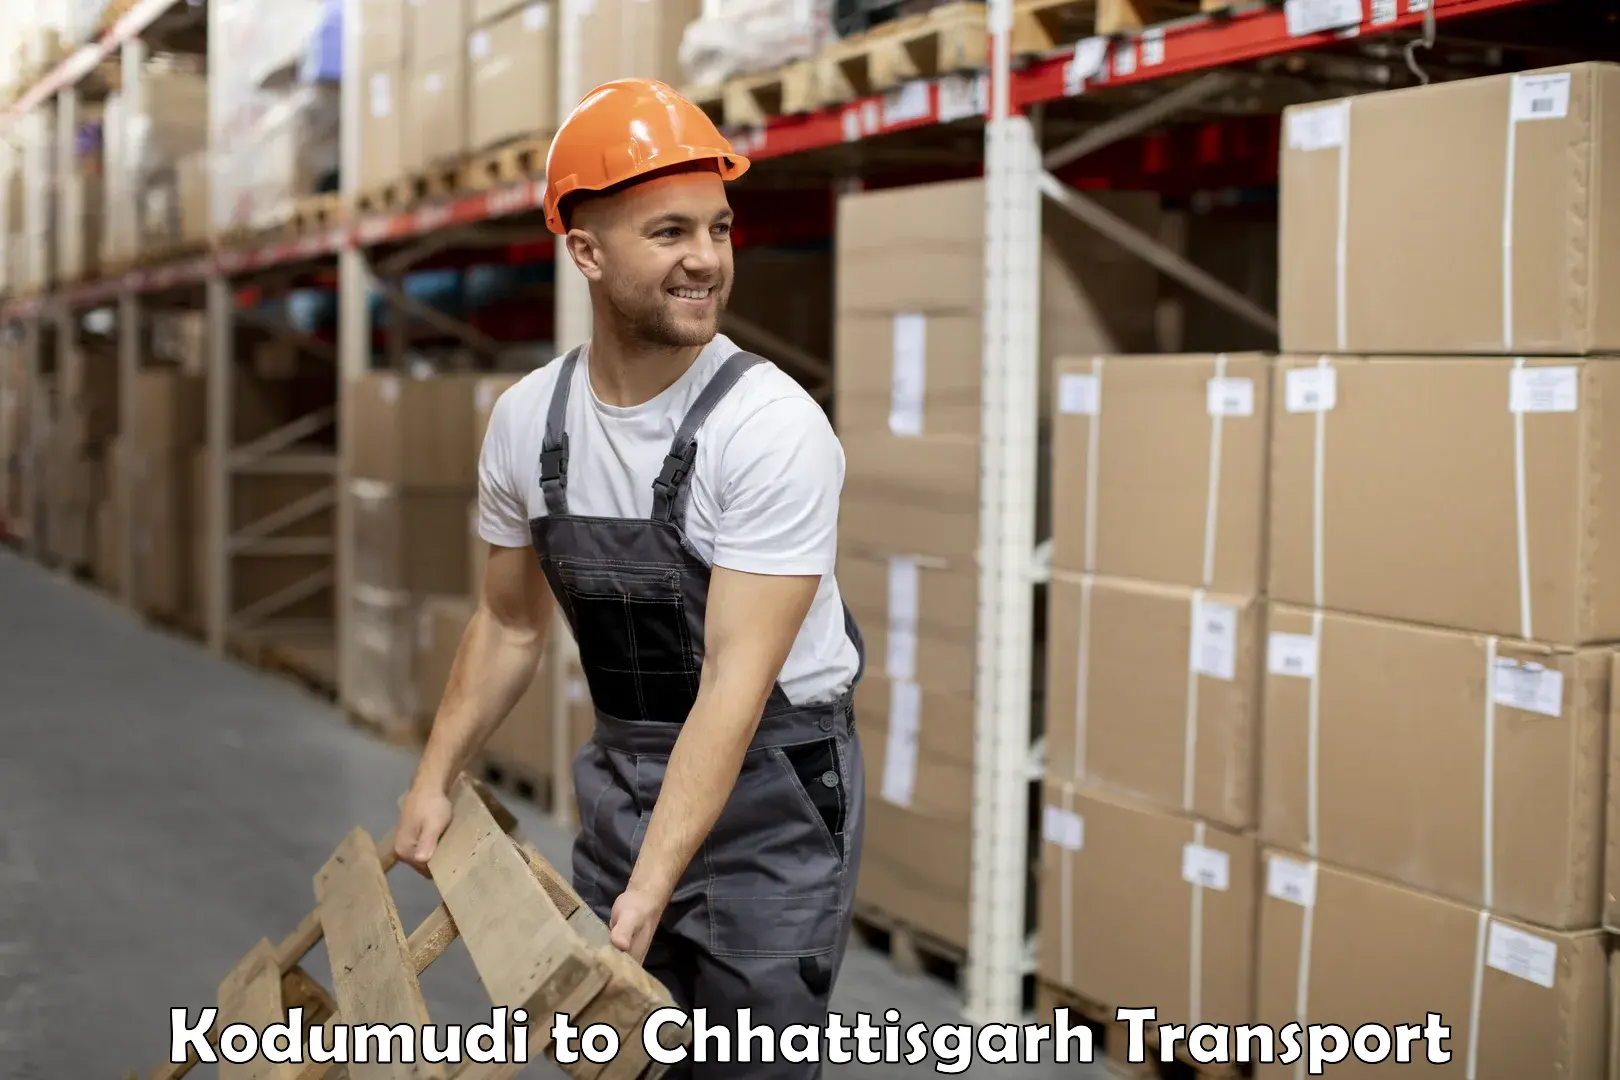 Furniture transport service Kodumudi to Pithora